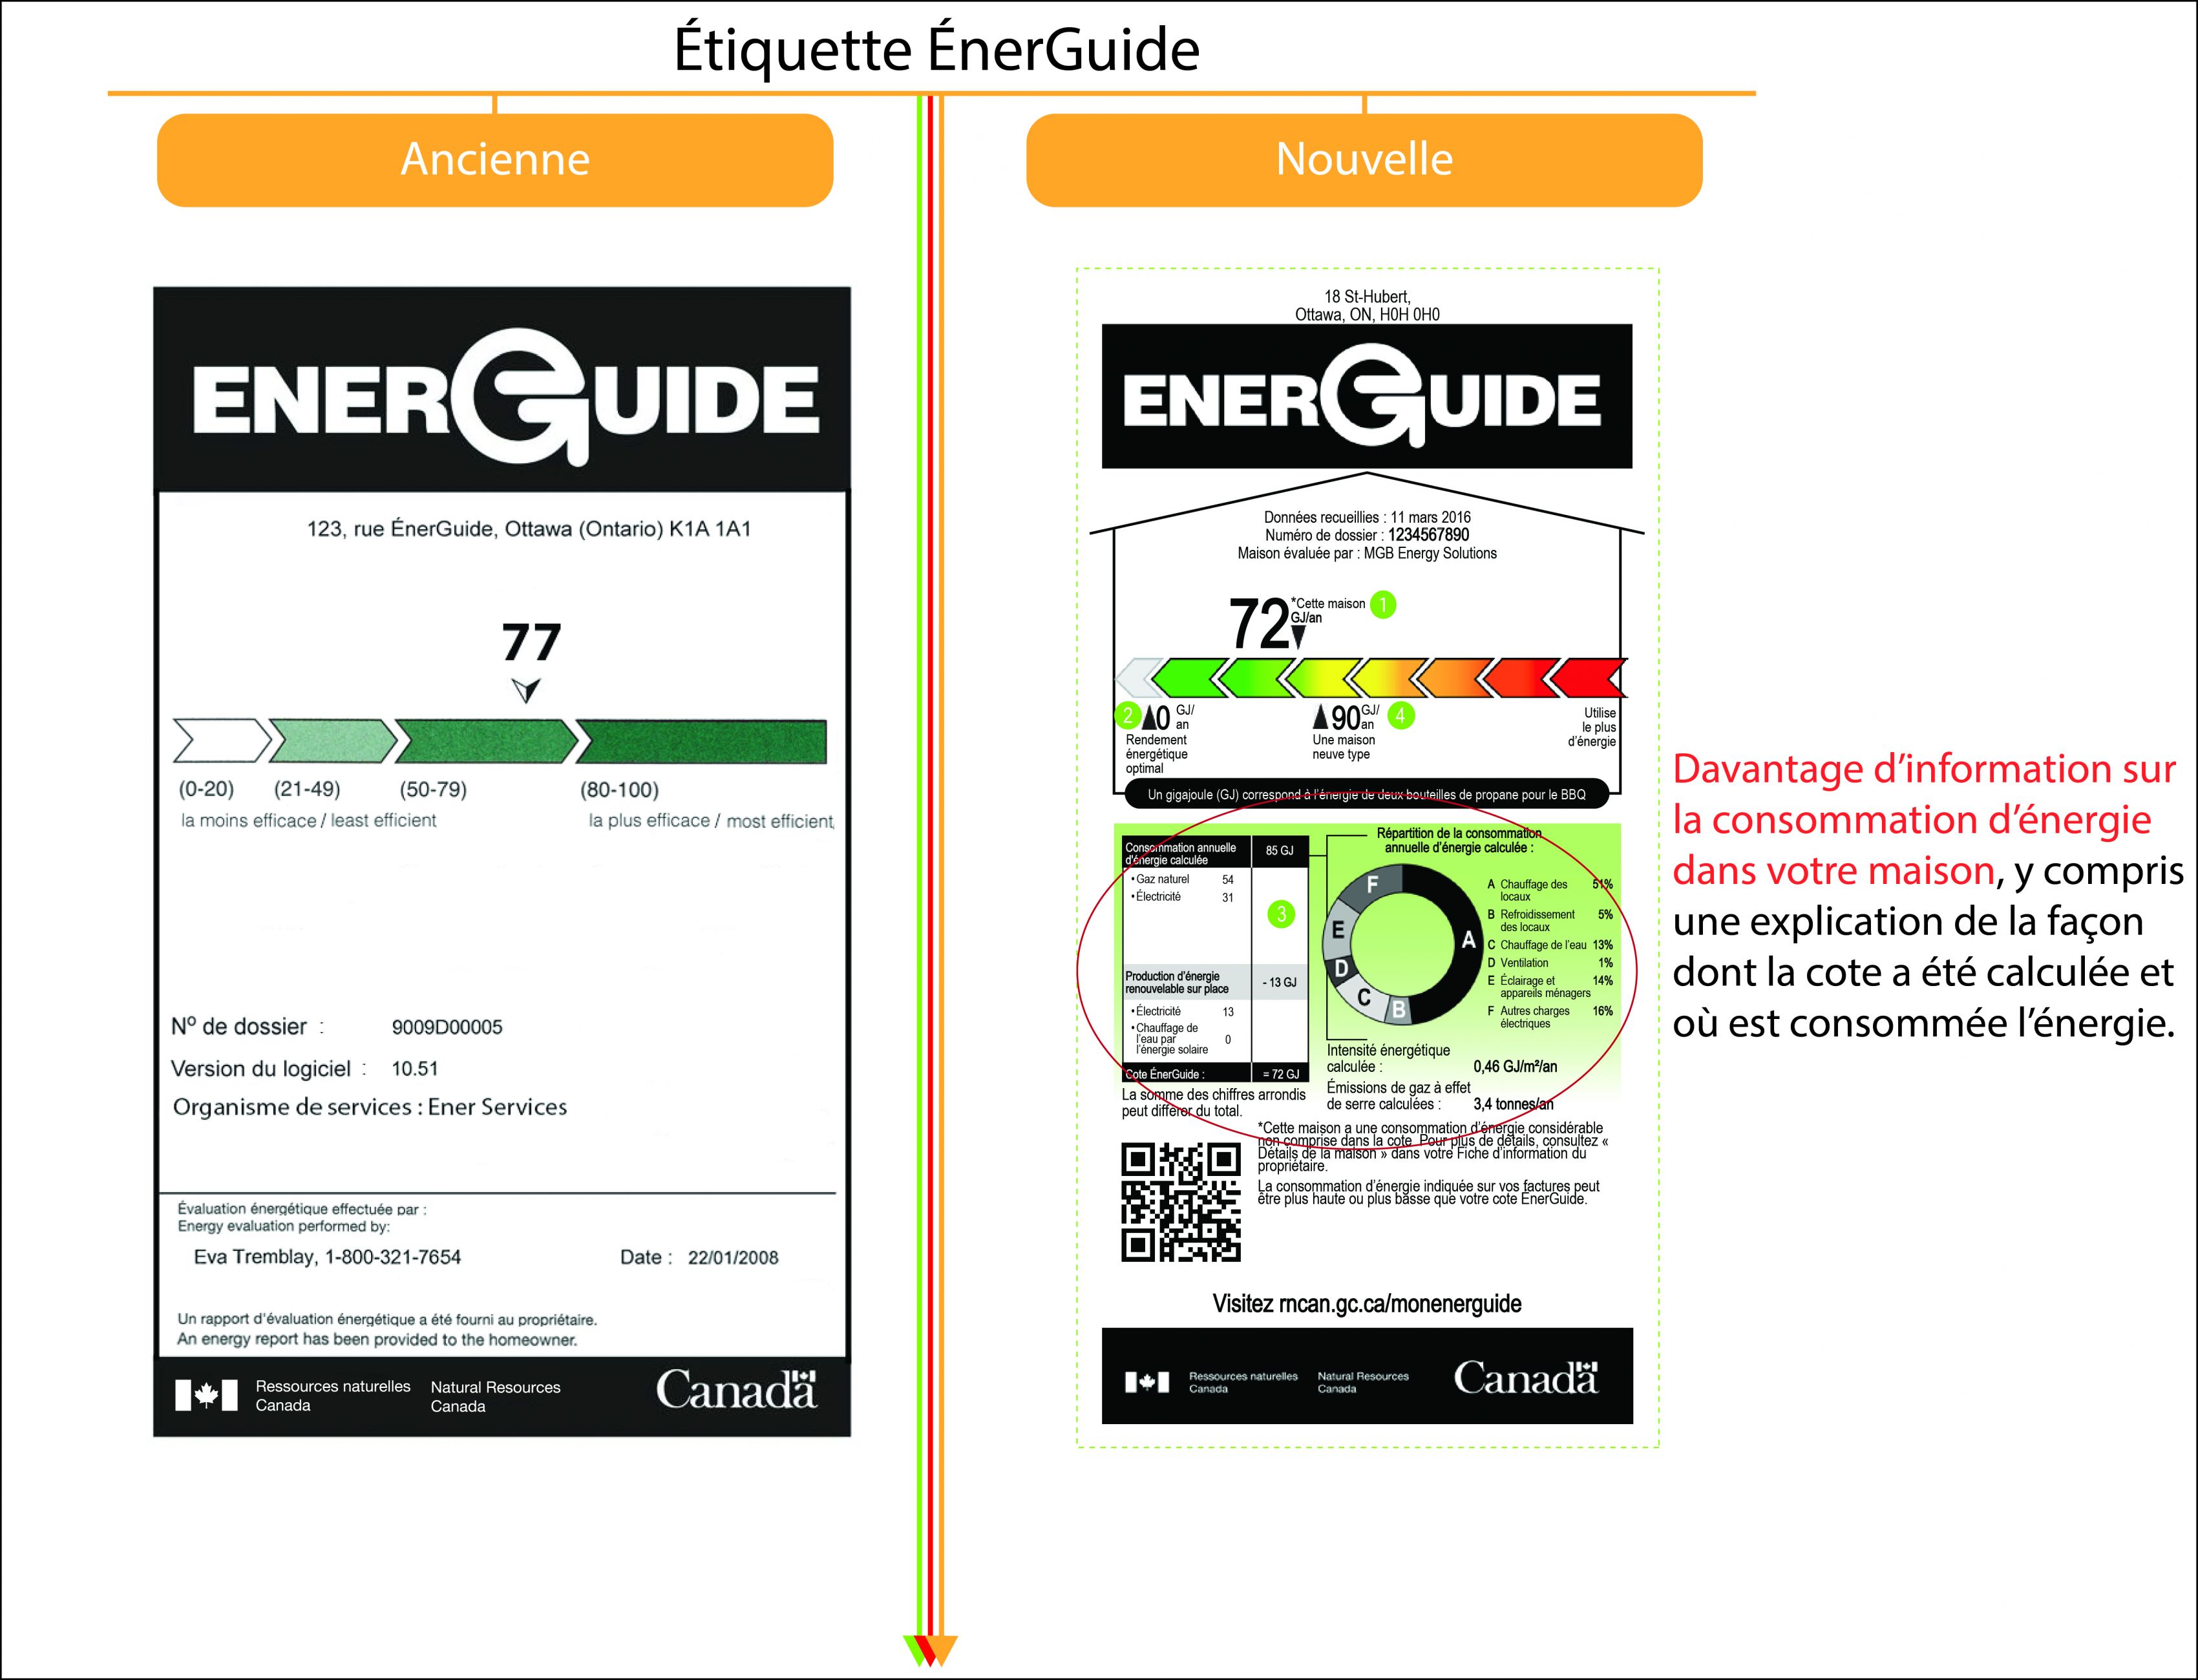 Une image illustrant les  différences entre l’ancienne et la nouvelle étiquette ÉnerGuide pour les  maisons.